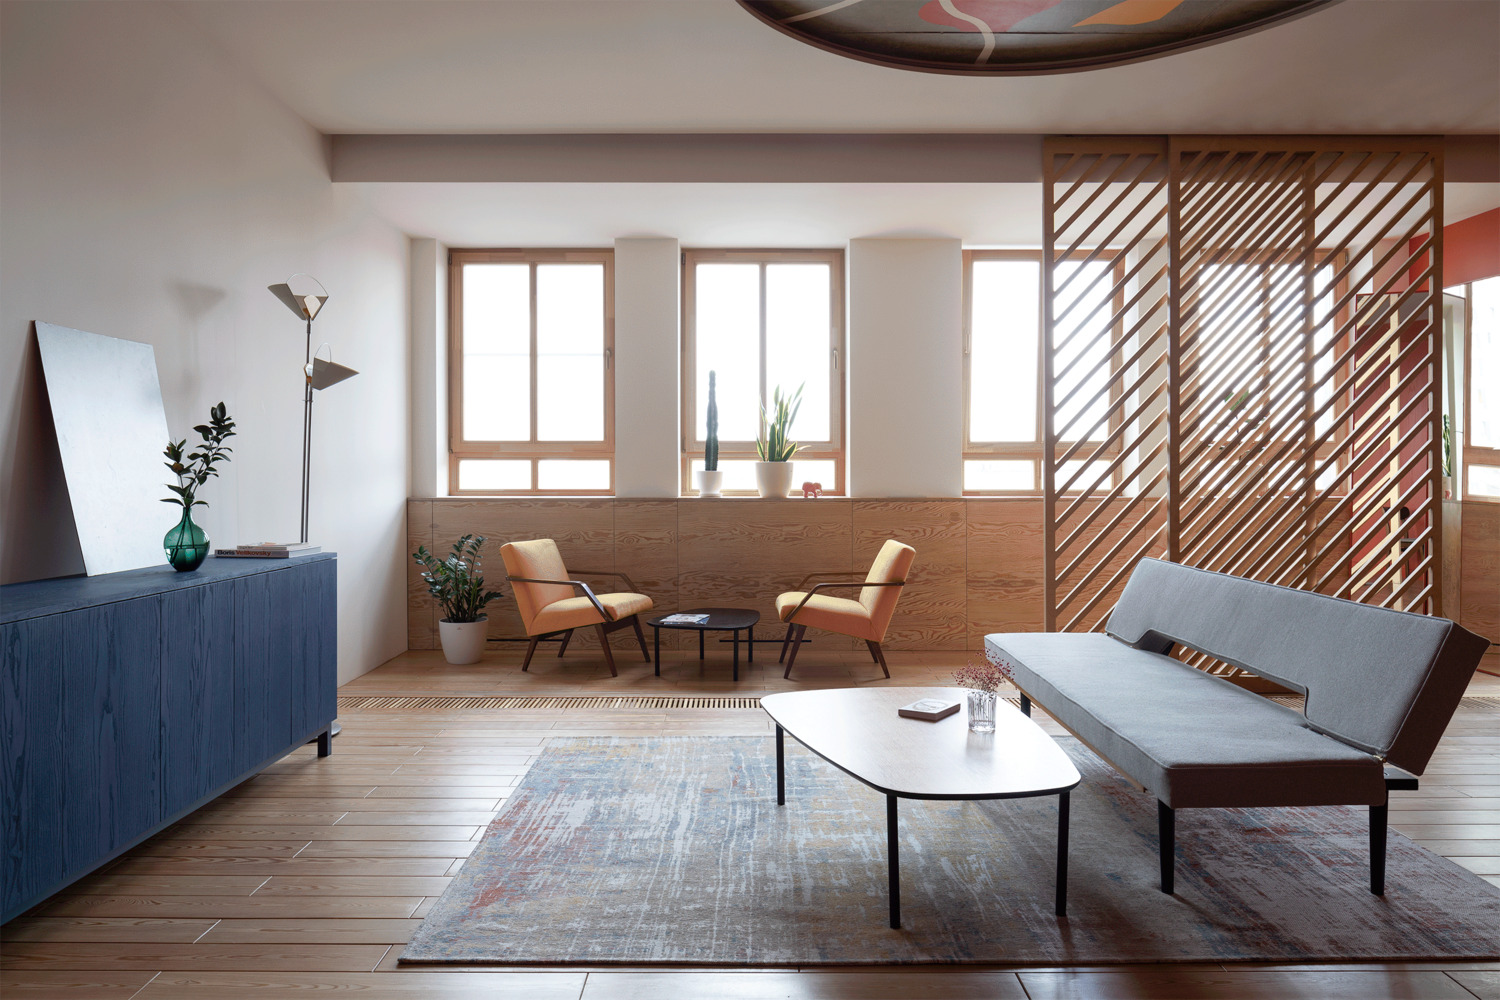 Phòng khách chính với chiếc ghế dài màu xám cùng bàn nước thiết kế đơn giản, tất cả được bố trí gọn gàng trên một tấm thảm trải sàn trên nền nhà gỗ.